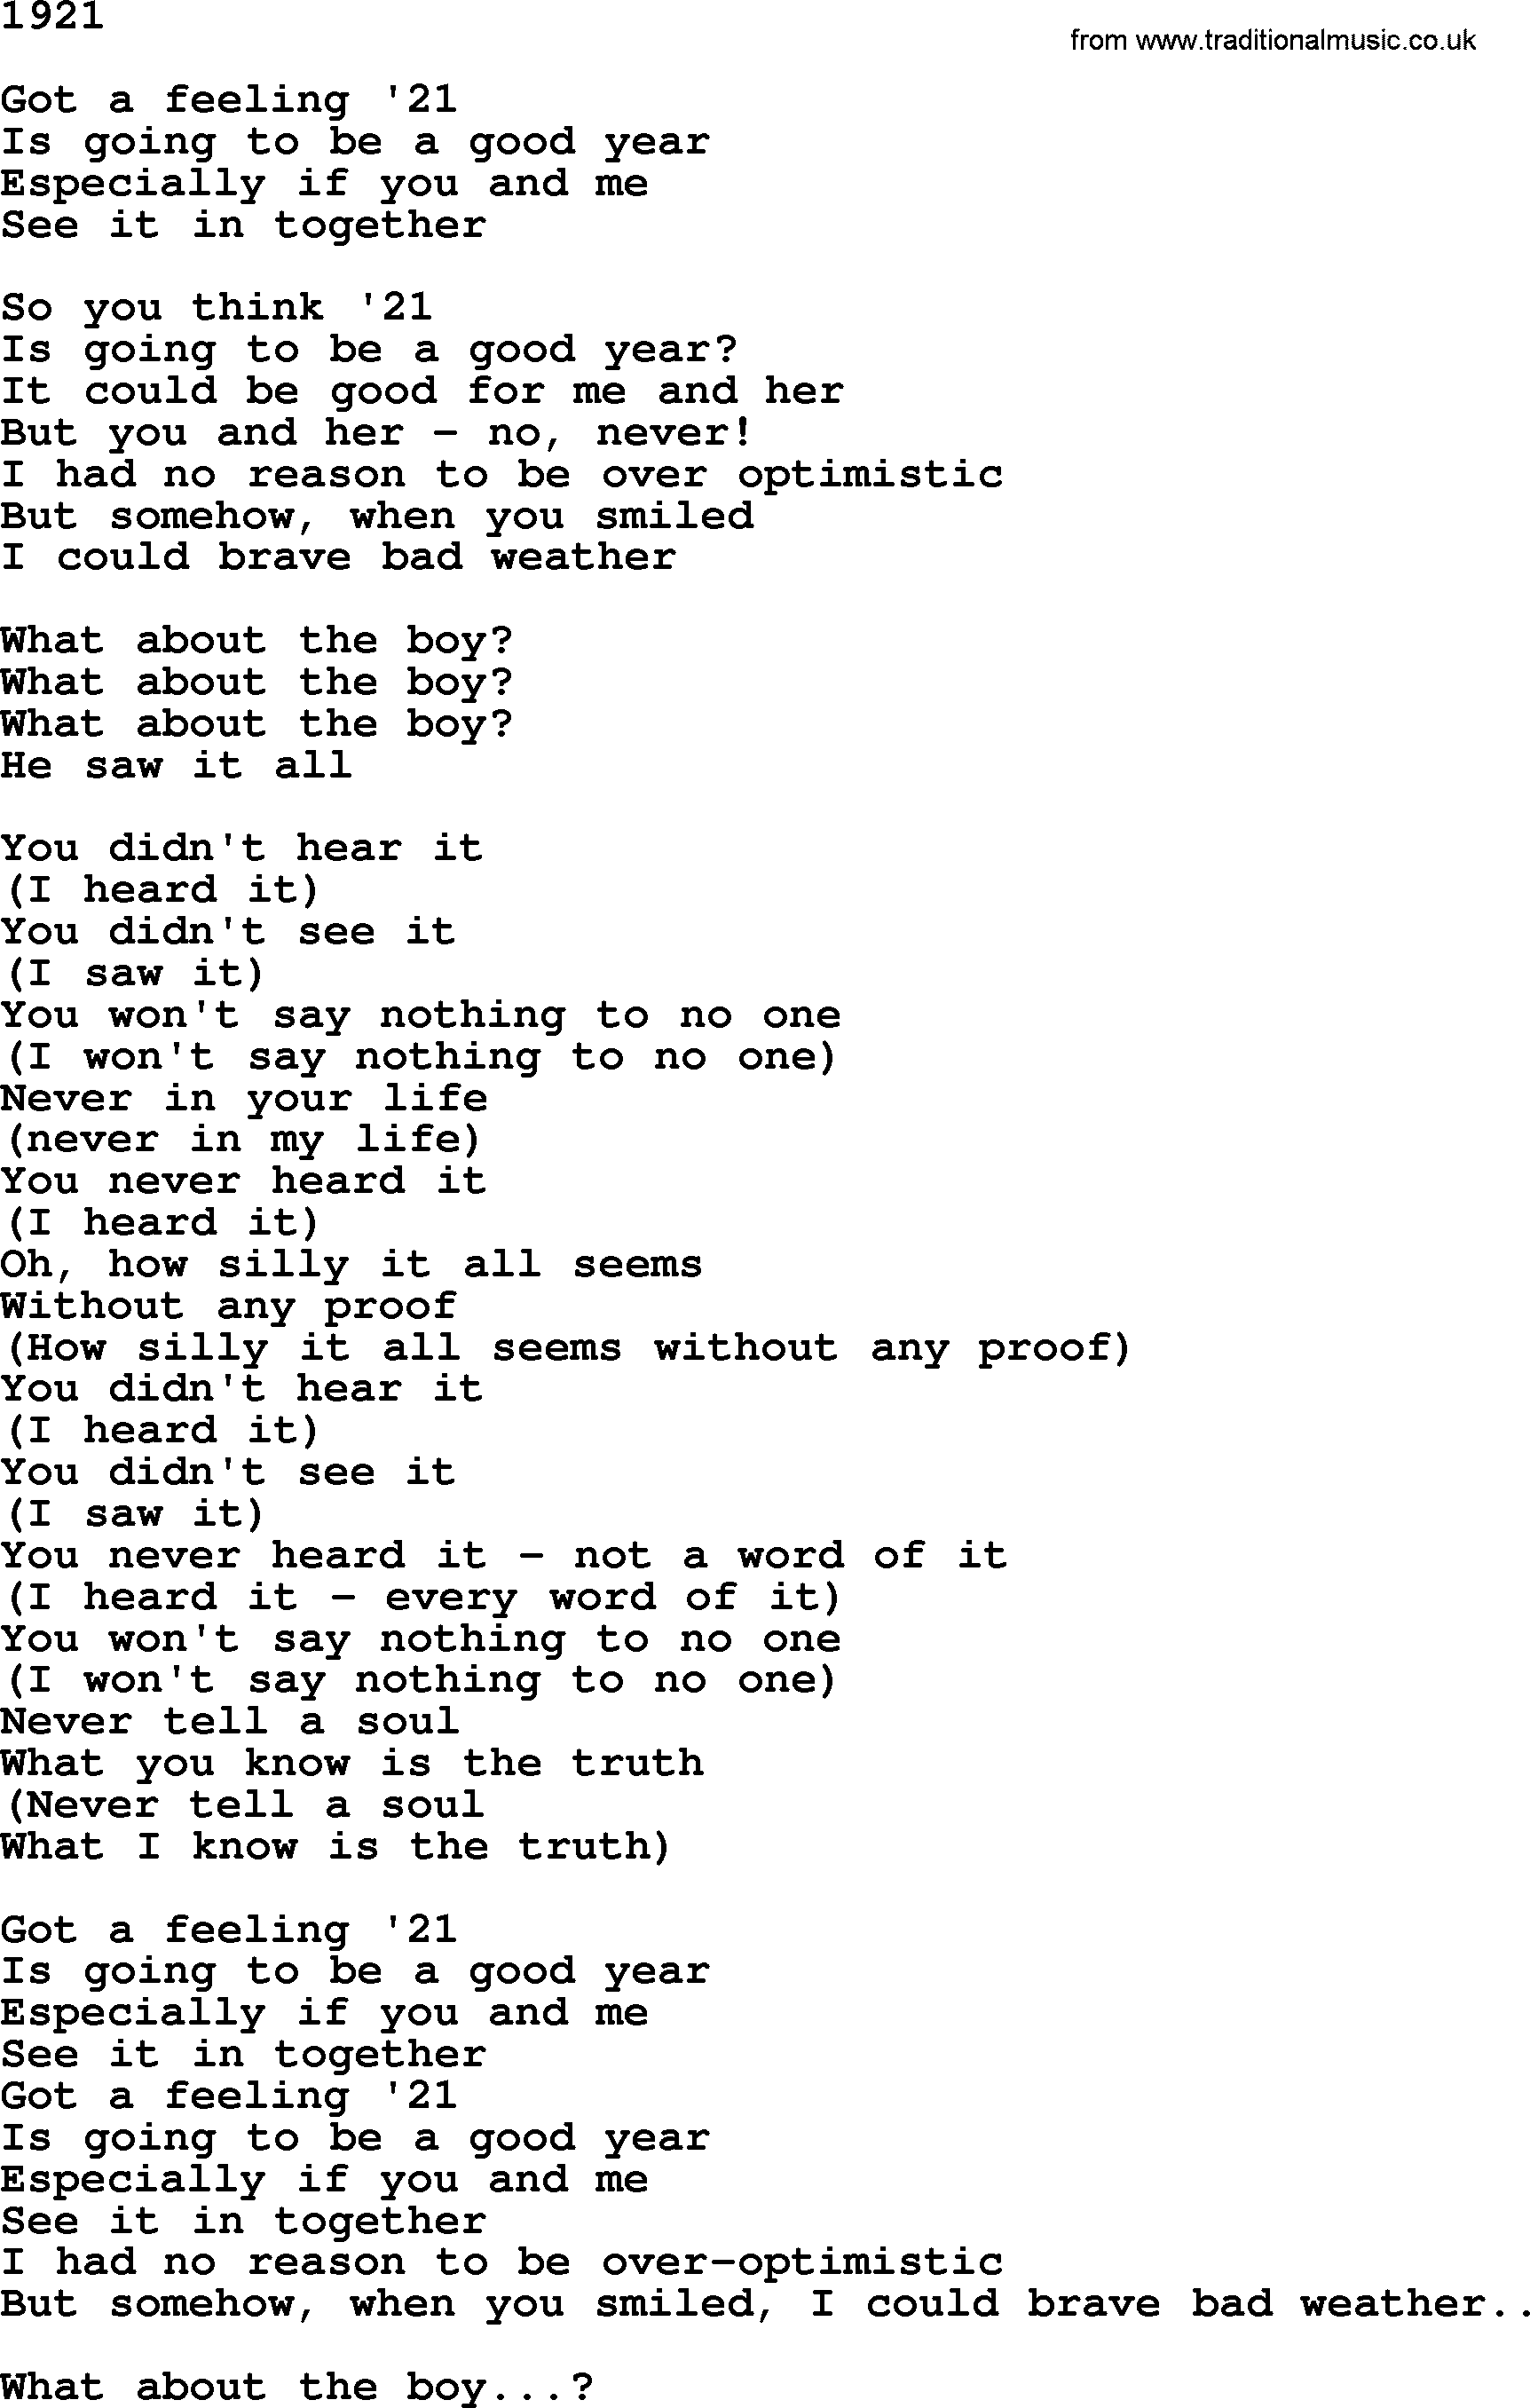 The Byrds song 1921, lyrics